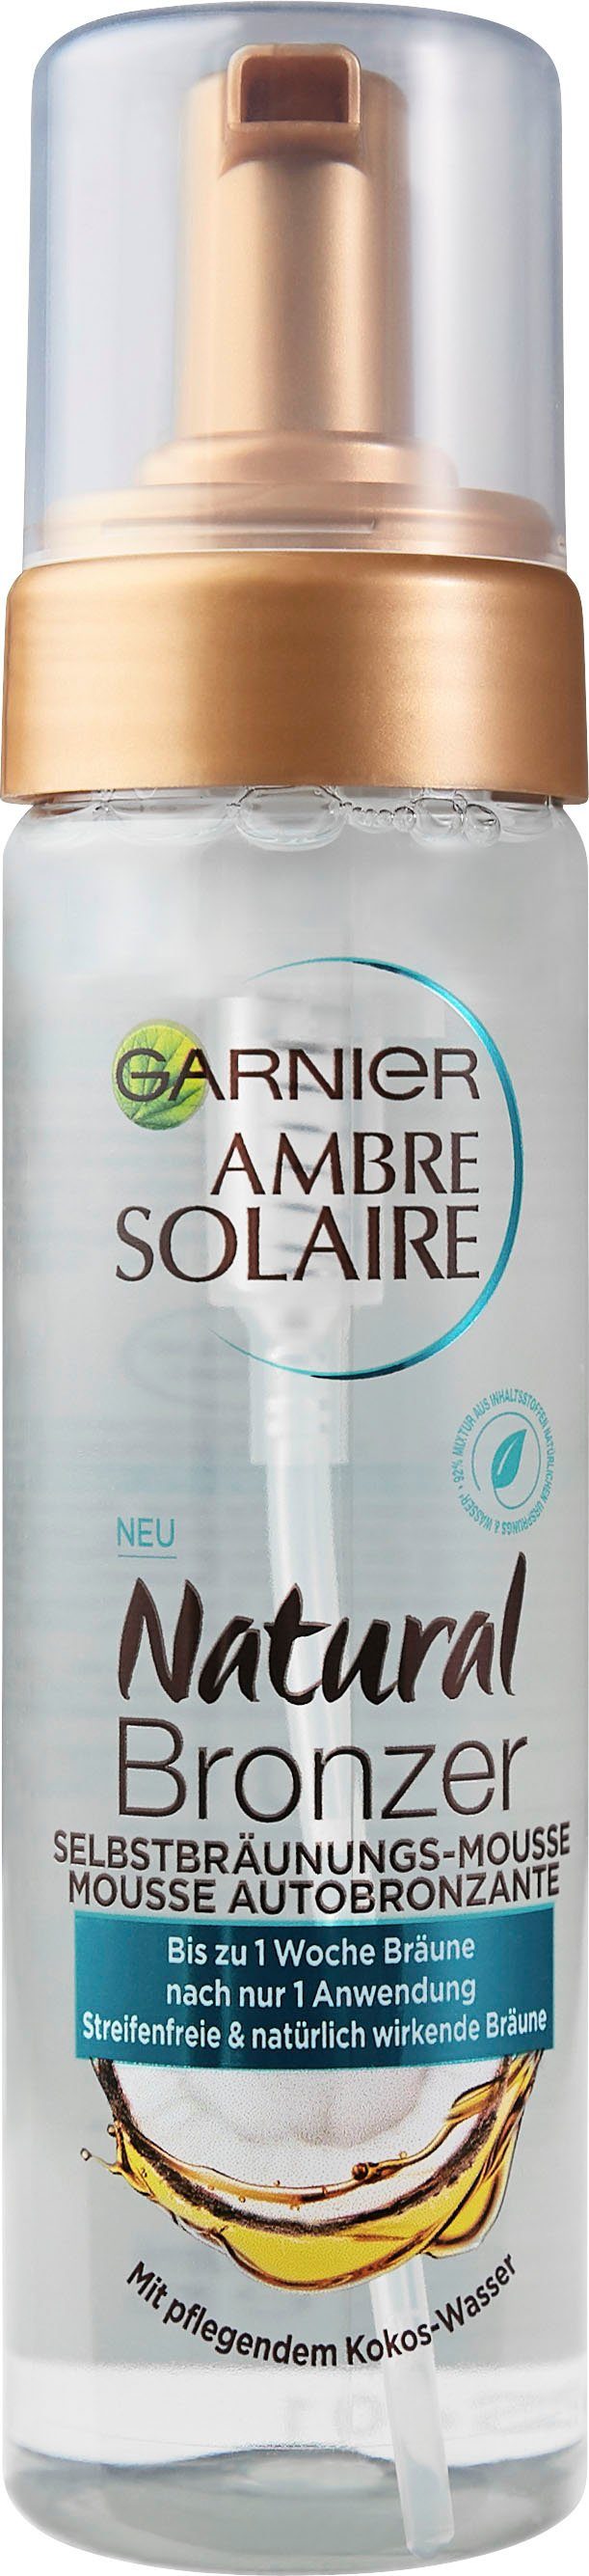 GARNIER Selbstbräunungsmousse »Ambre Solaire Natural Bronzer«, mit  pflegendem Kokoswasser online kaufen | OTTO